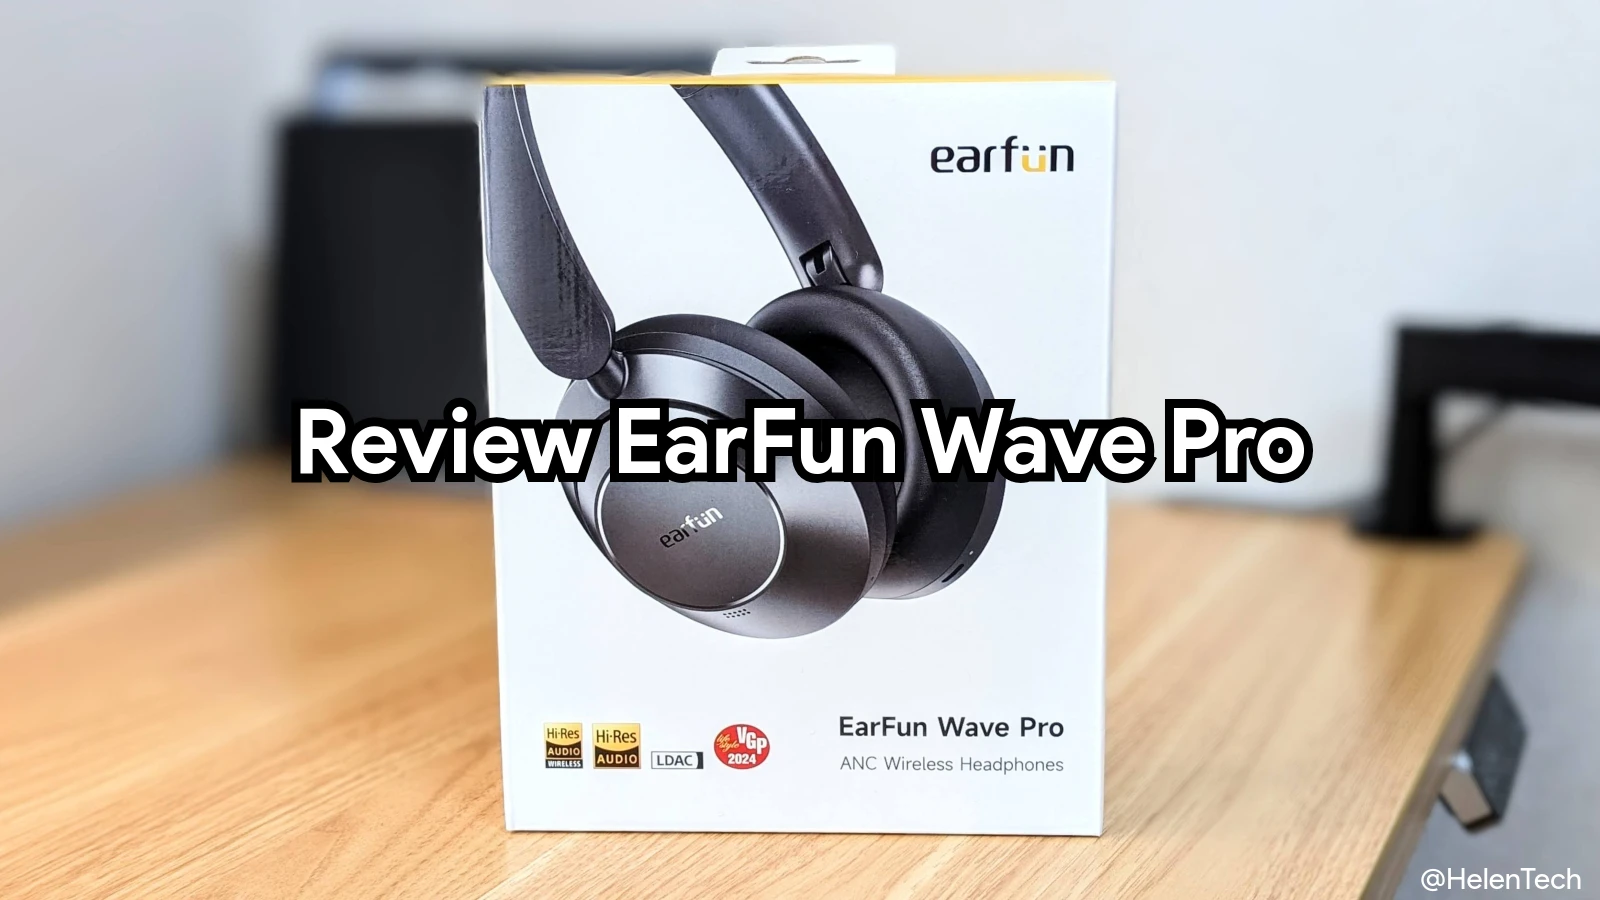 ｢EarFun Wave Pro｣を実機レビュー。1万円以下で高コスパな ANC & LDAC 対応ワイヤレスヘッドホン